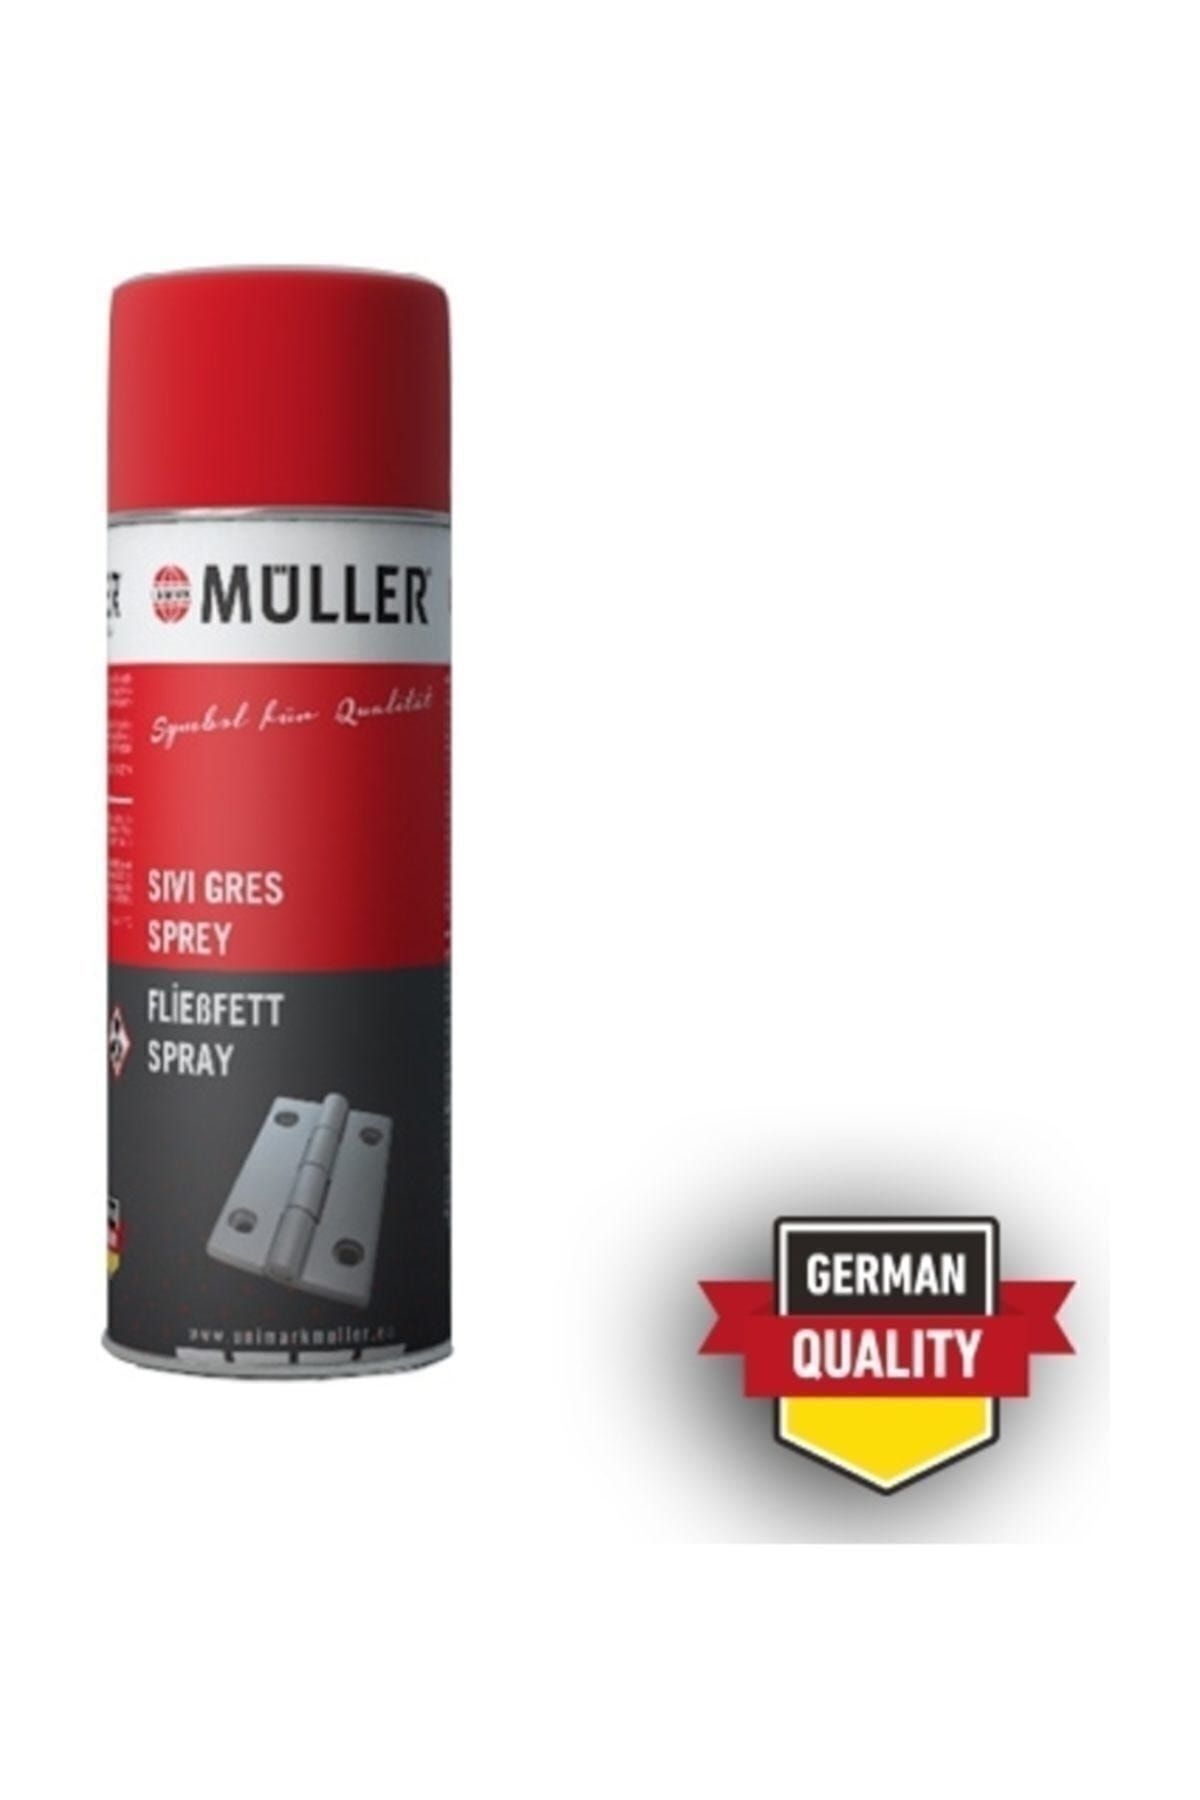 Müller Şeffaf Sıvı Gres Sprey 400 ml (ÜSTÜN ALMAN KALİTESİ)